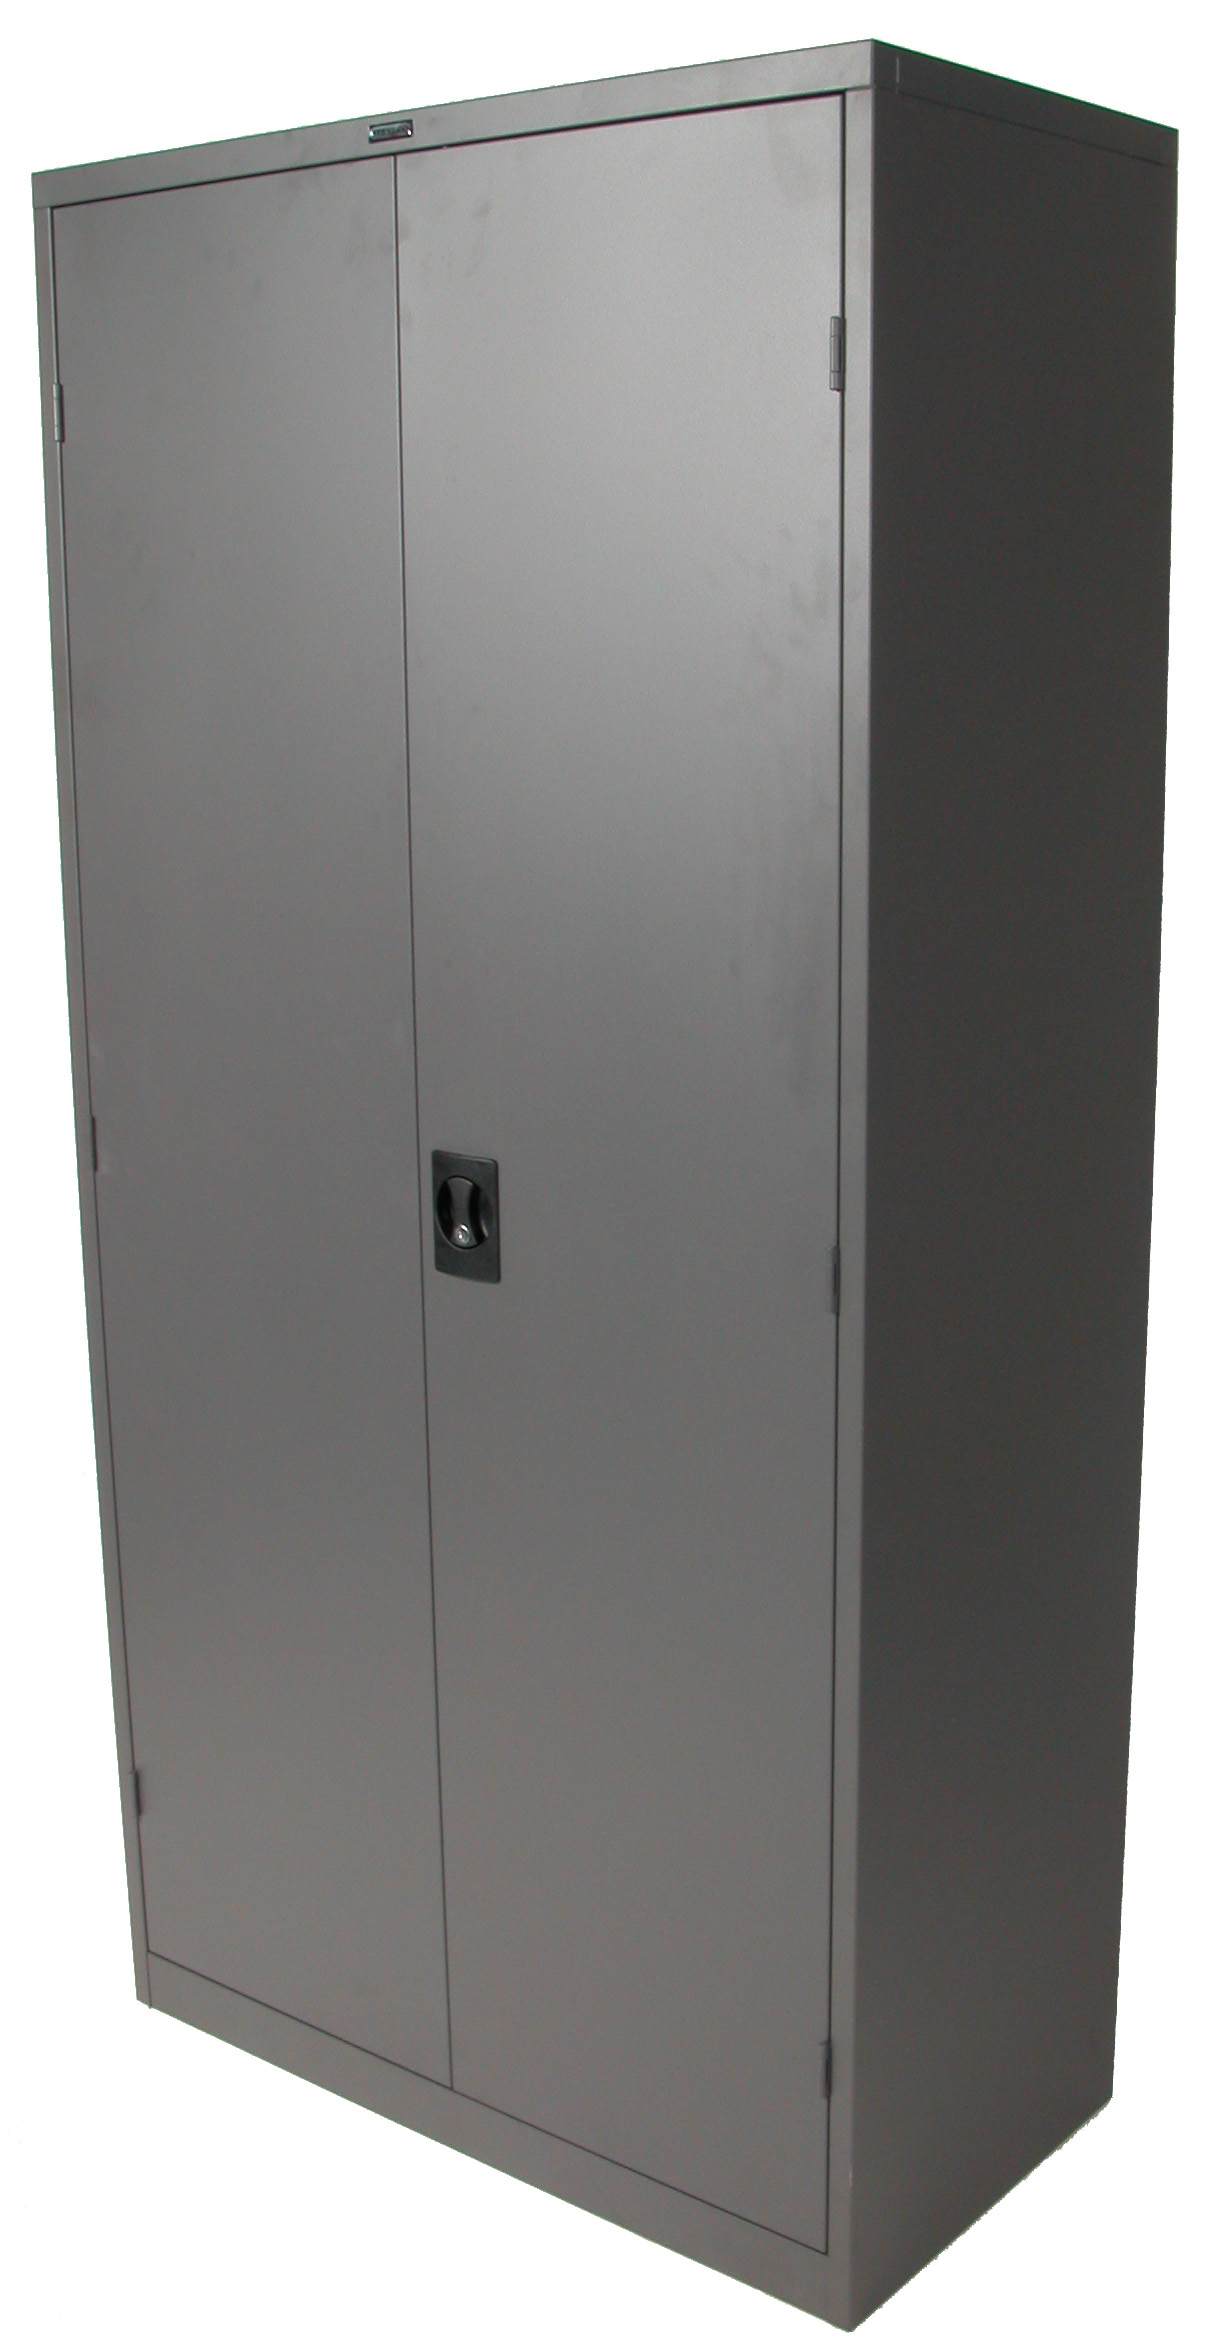 Steelco Storage Cabinet 3 Shelf Levels Better Storage